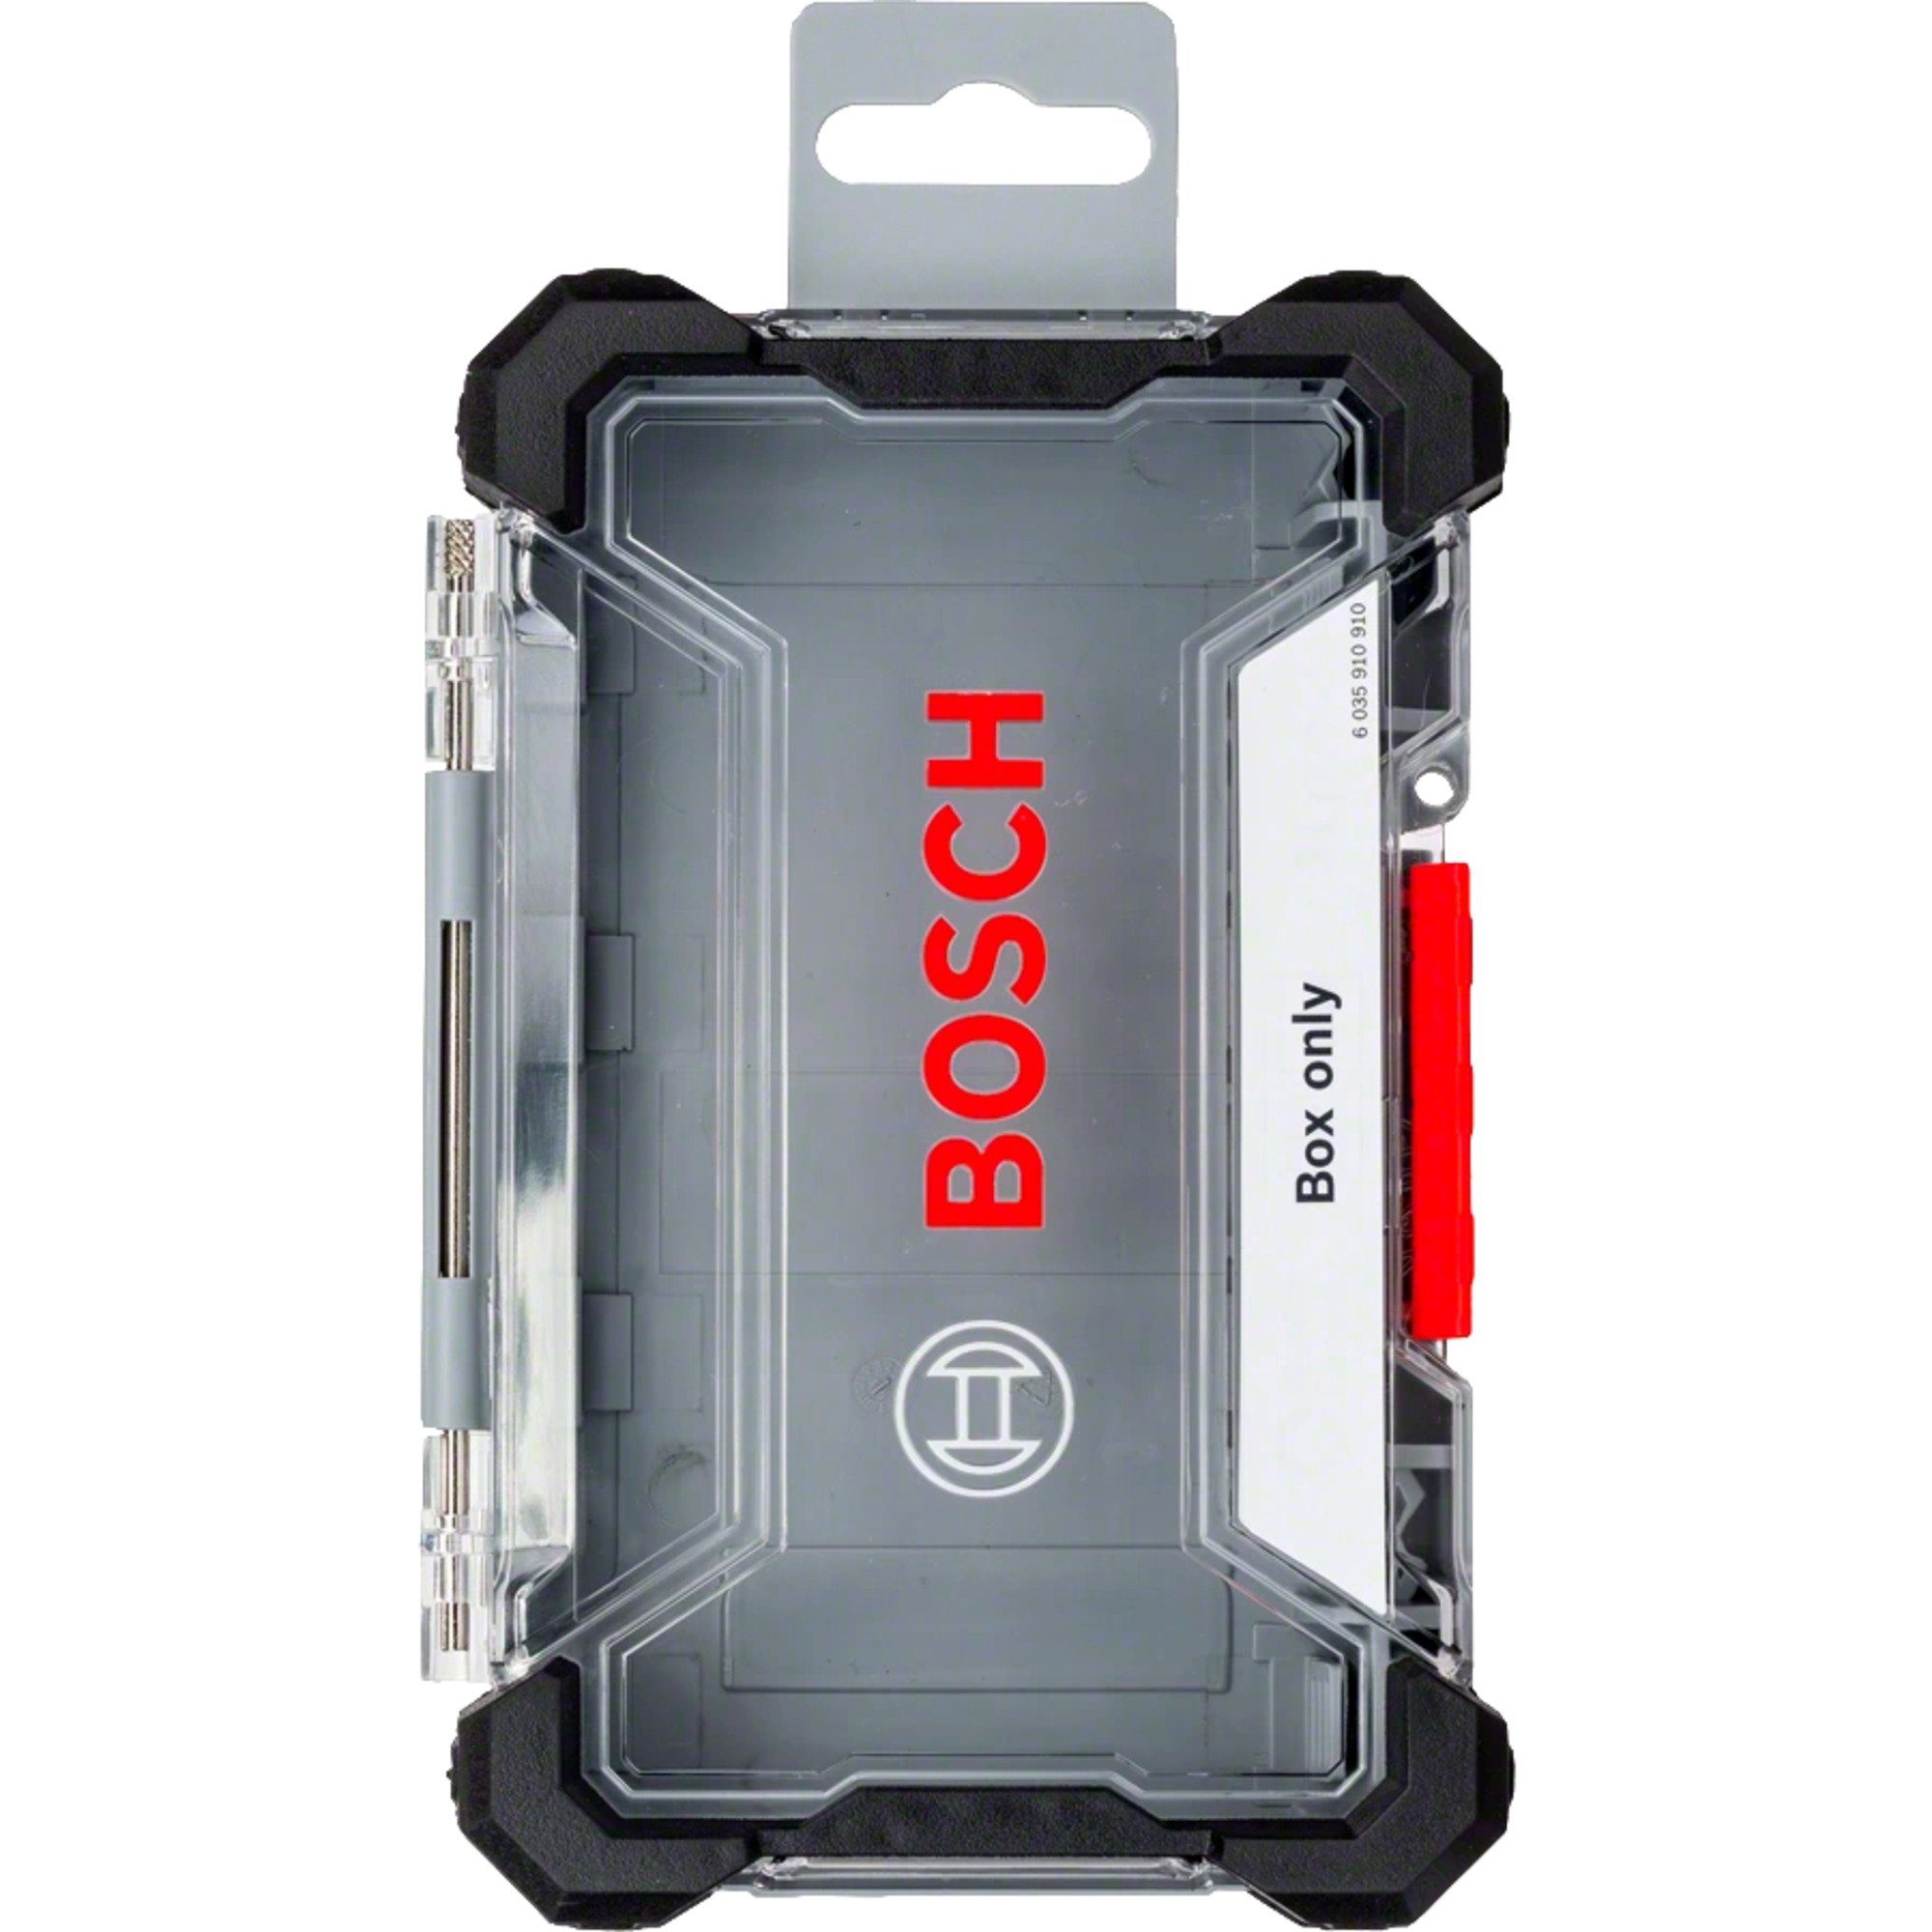 BOSCH Werkzeugbox Bosch Professional Impact Kassette M Größe